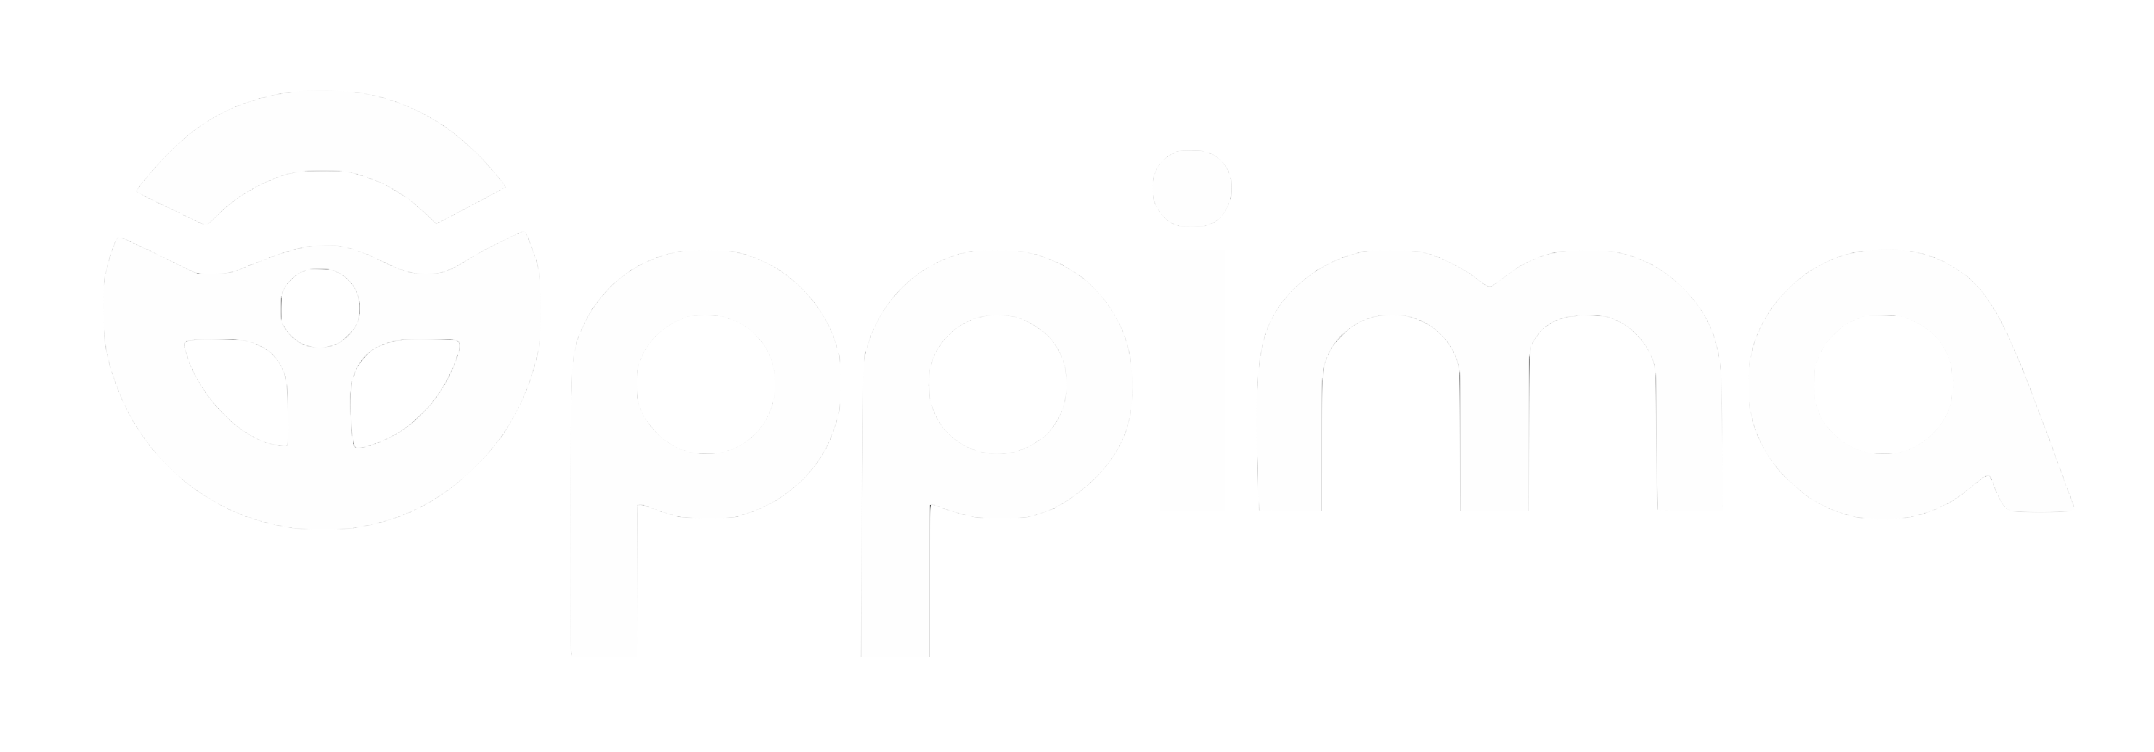 Oppima logo white